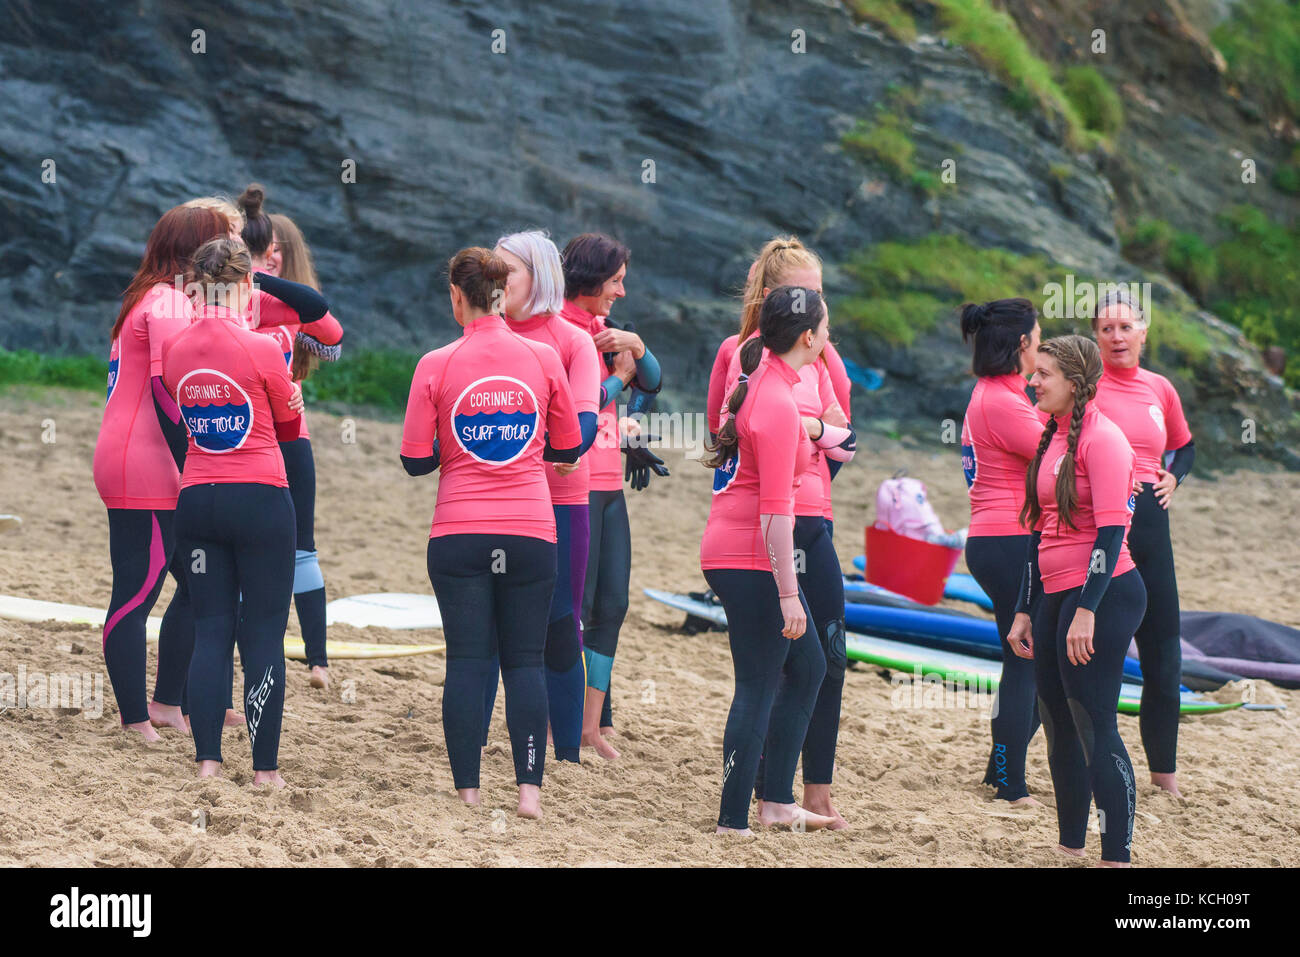 Le donne in attesa di iniziare una Lezione di Surf - Surf Betty's Festival un festival che si tiene a Newquay per aiutare le donne attraverso il surf e il fitness. Foto Stock